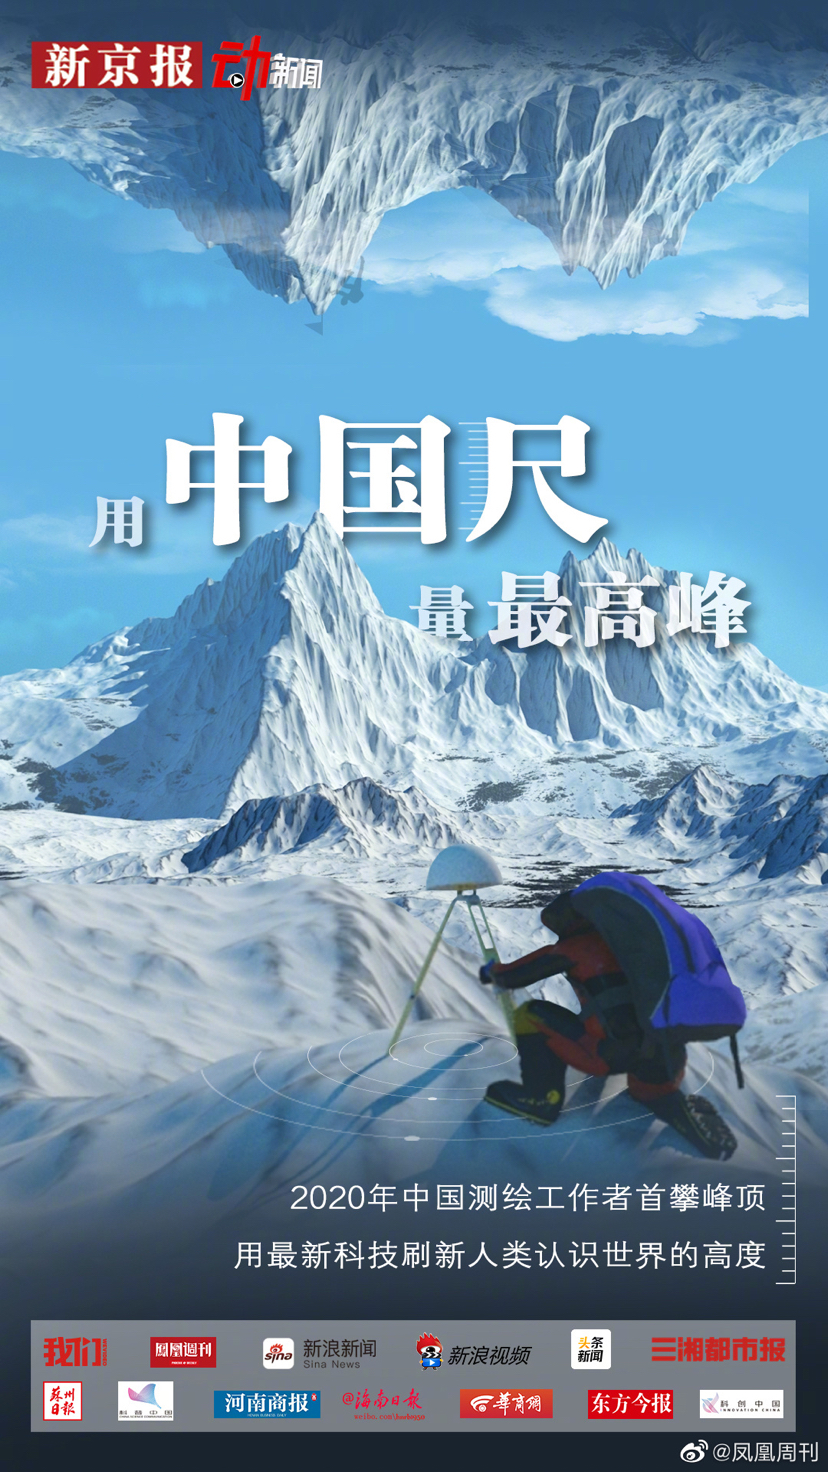 2020珠峰高程测量登山队冲顶